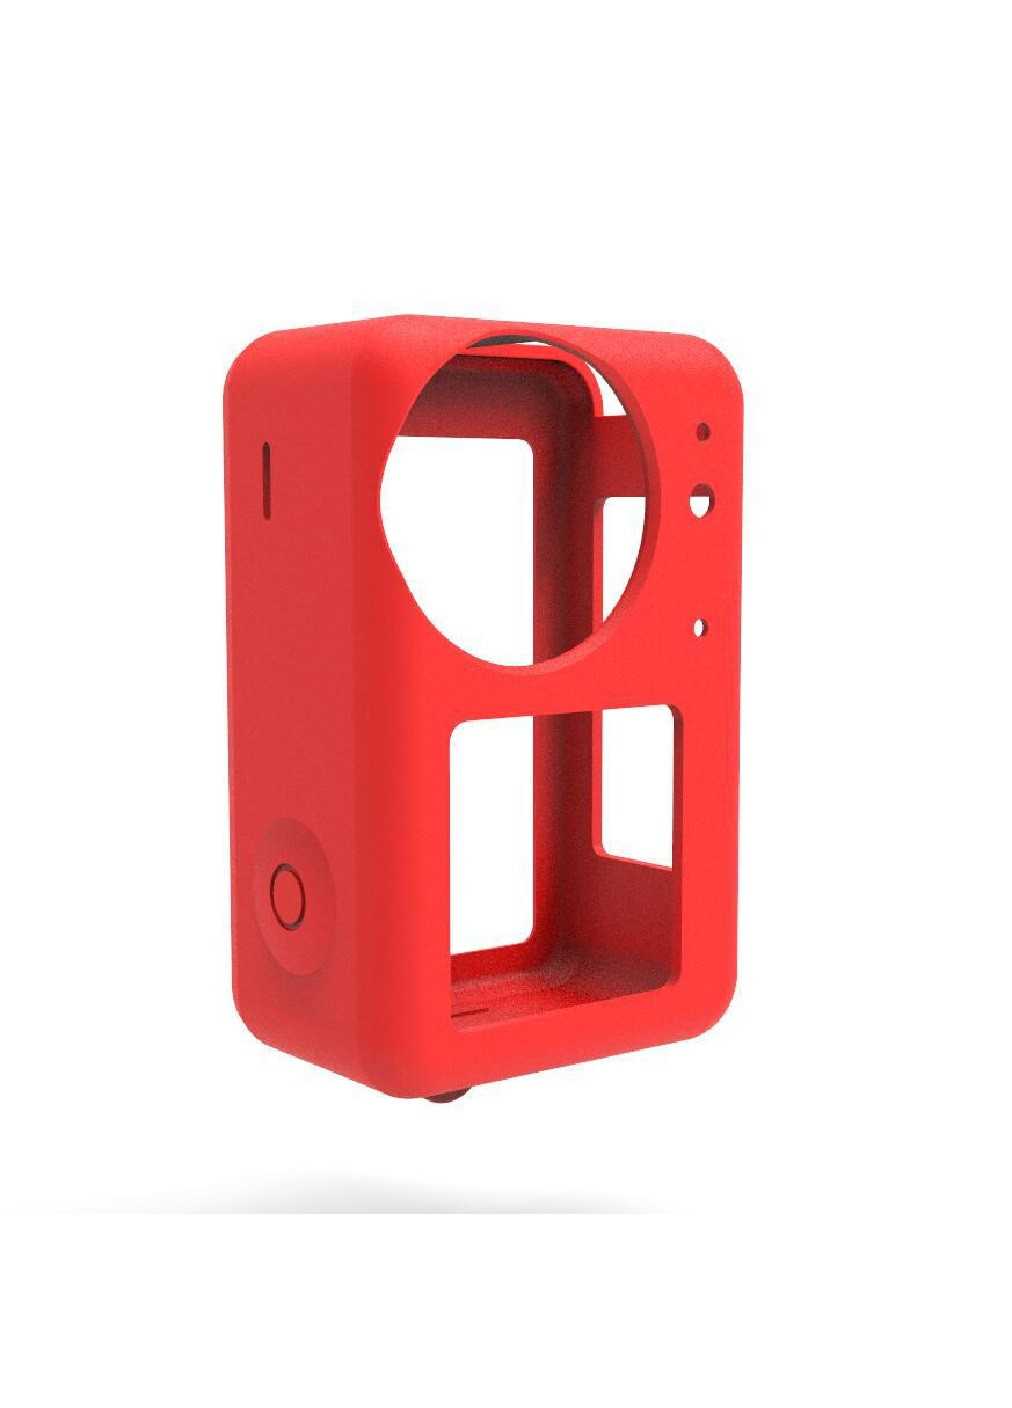 Защитный силиконовый чехол защита от пыли загрязнения царапин ударов для экшн камеры для DJI Action 3 (474923-Prob) Красный Unbranded (260377282)